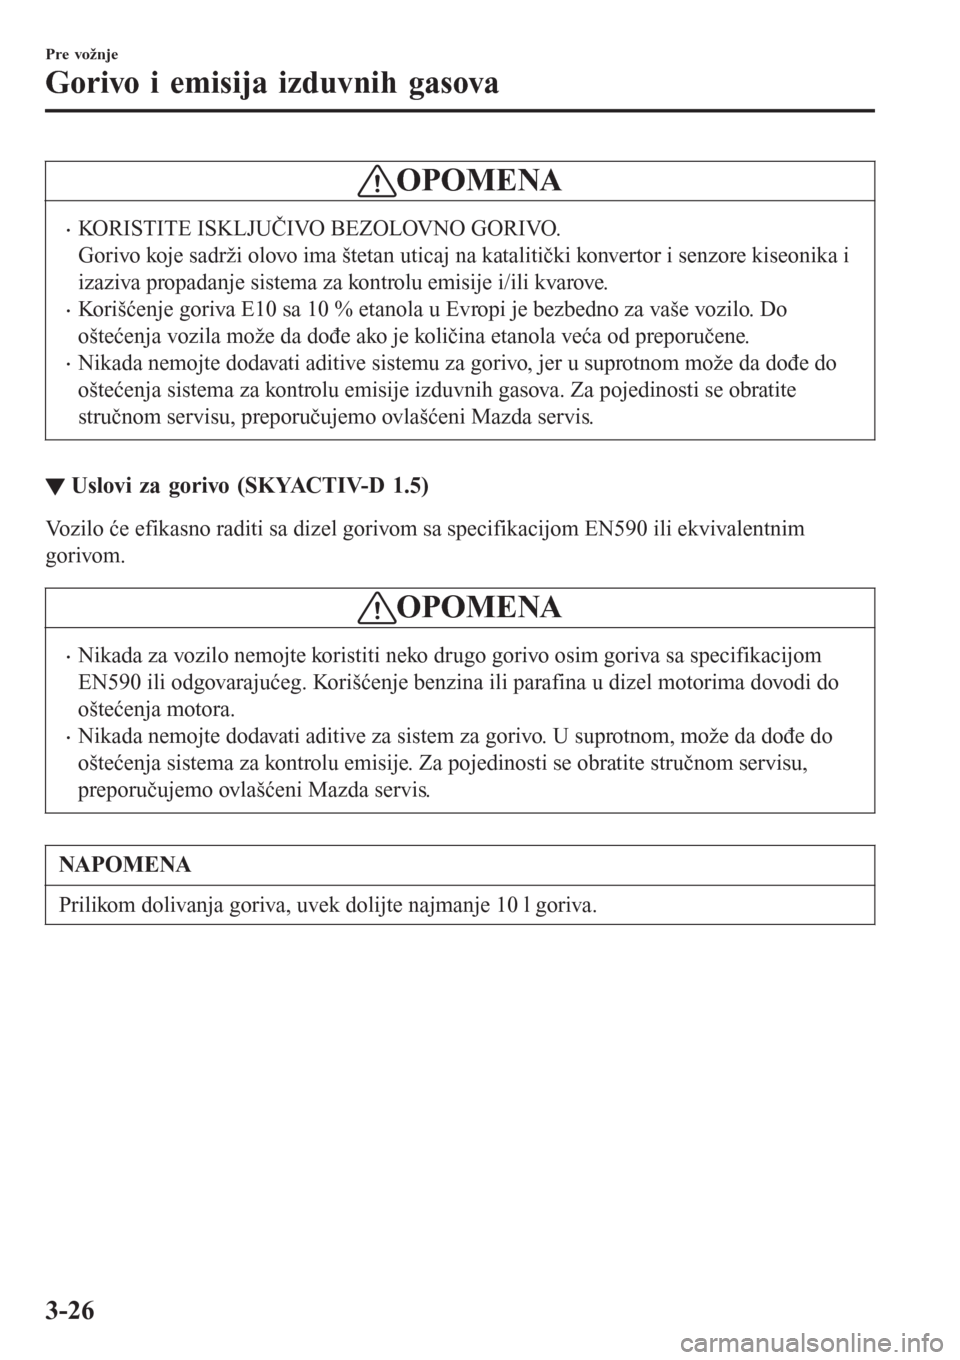 MAZDA MODEL CX-3 2016  Korisničko uputstvo (in Serbian) OPOMENA
•KORISTITE ISKLJUČIVO BEZOLOVNO GORIVO.
Gorivo koje sadrži olovo ima štetan uticaj na katalitički konvertor i senzore kiseonika i
izaziva propadanje sistema za kontrolu emisije i/ili kva